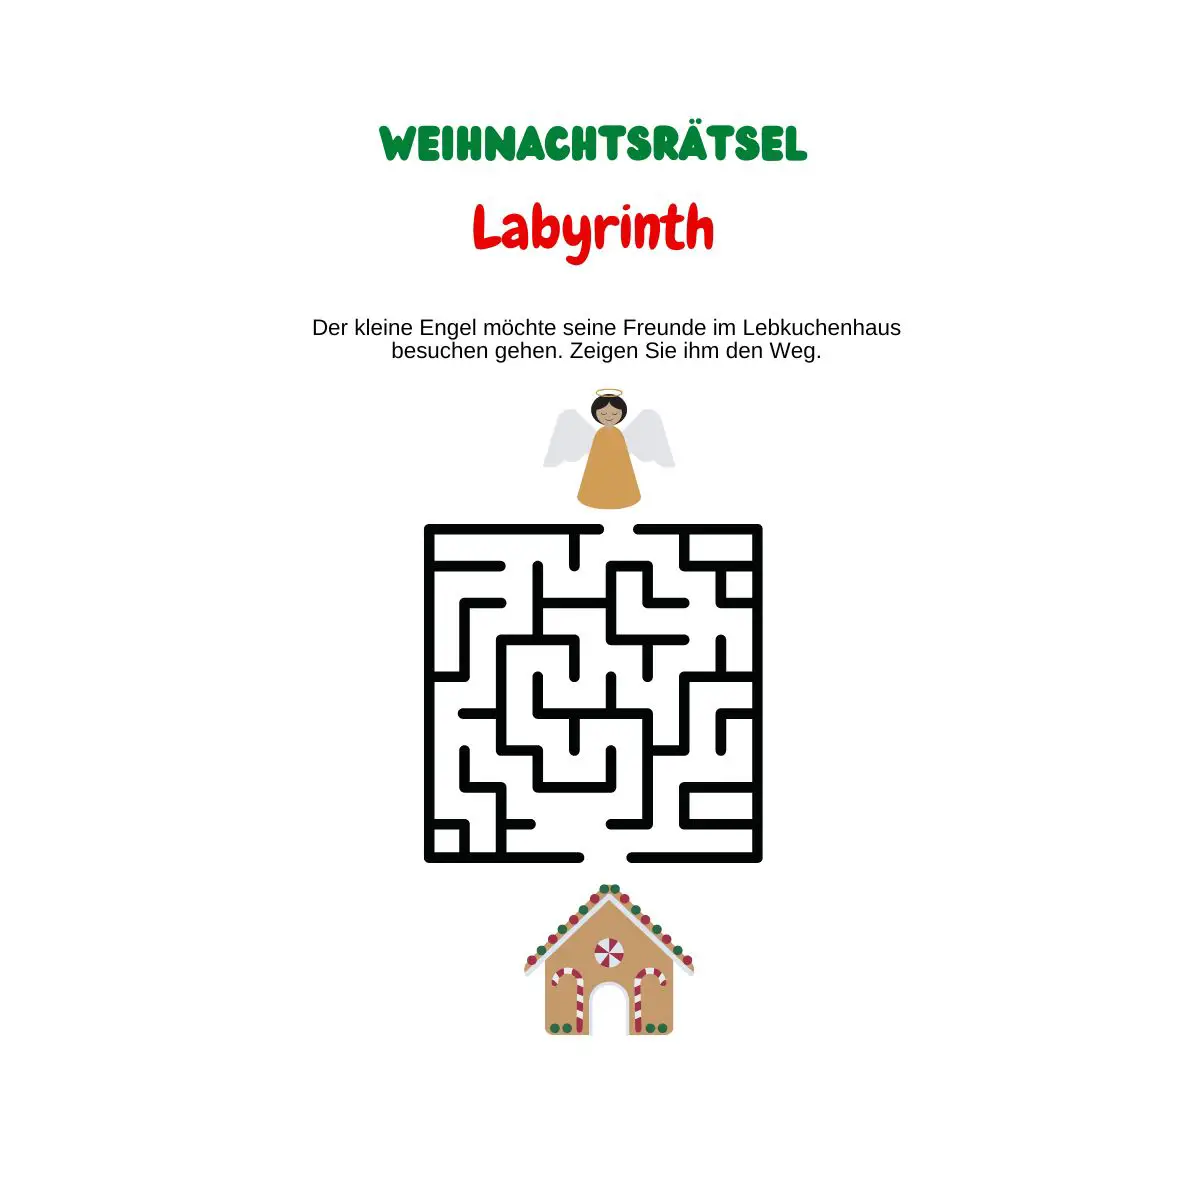 Labyrinth mit Weihnachtsengel und Lebkuchenhaus.